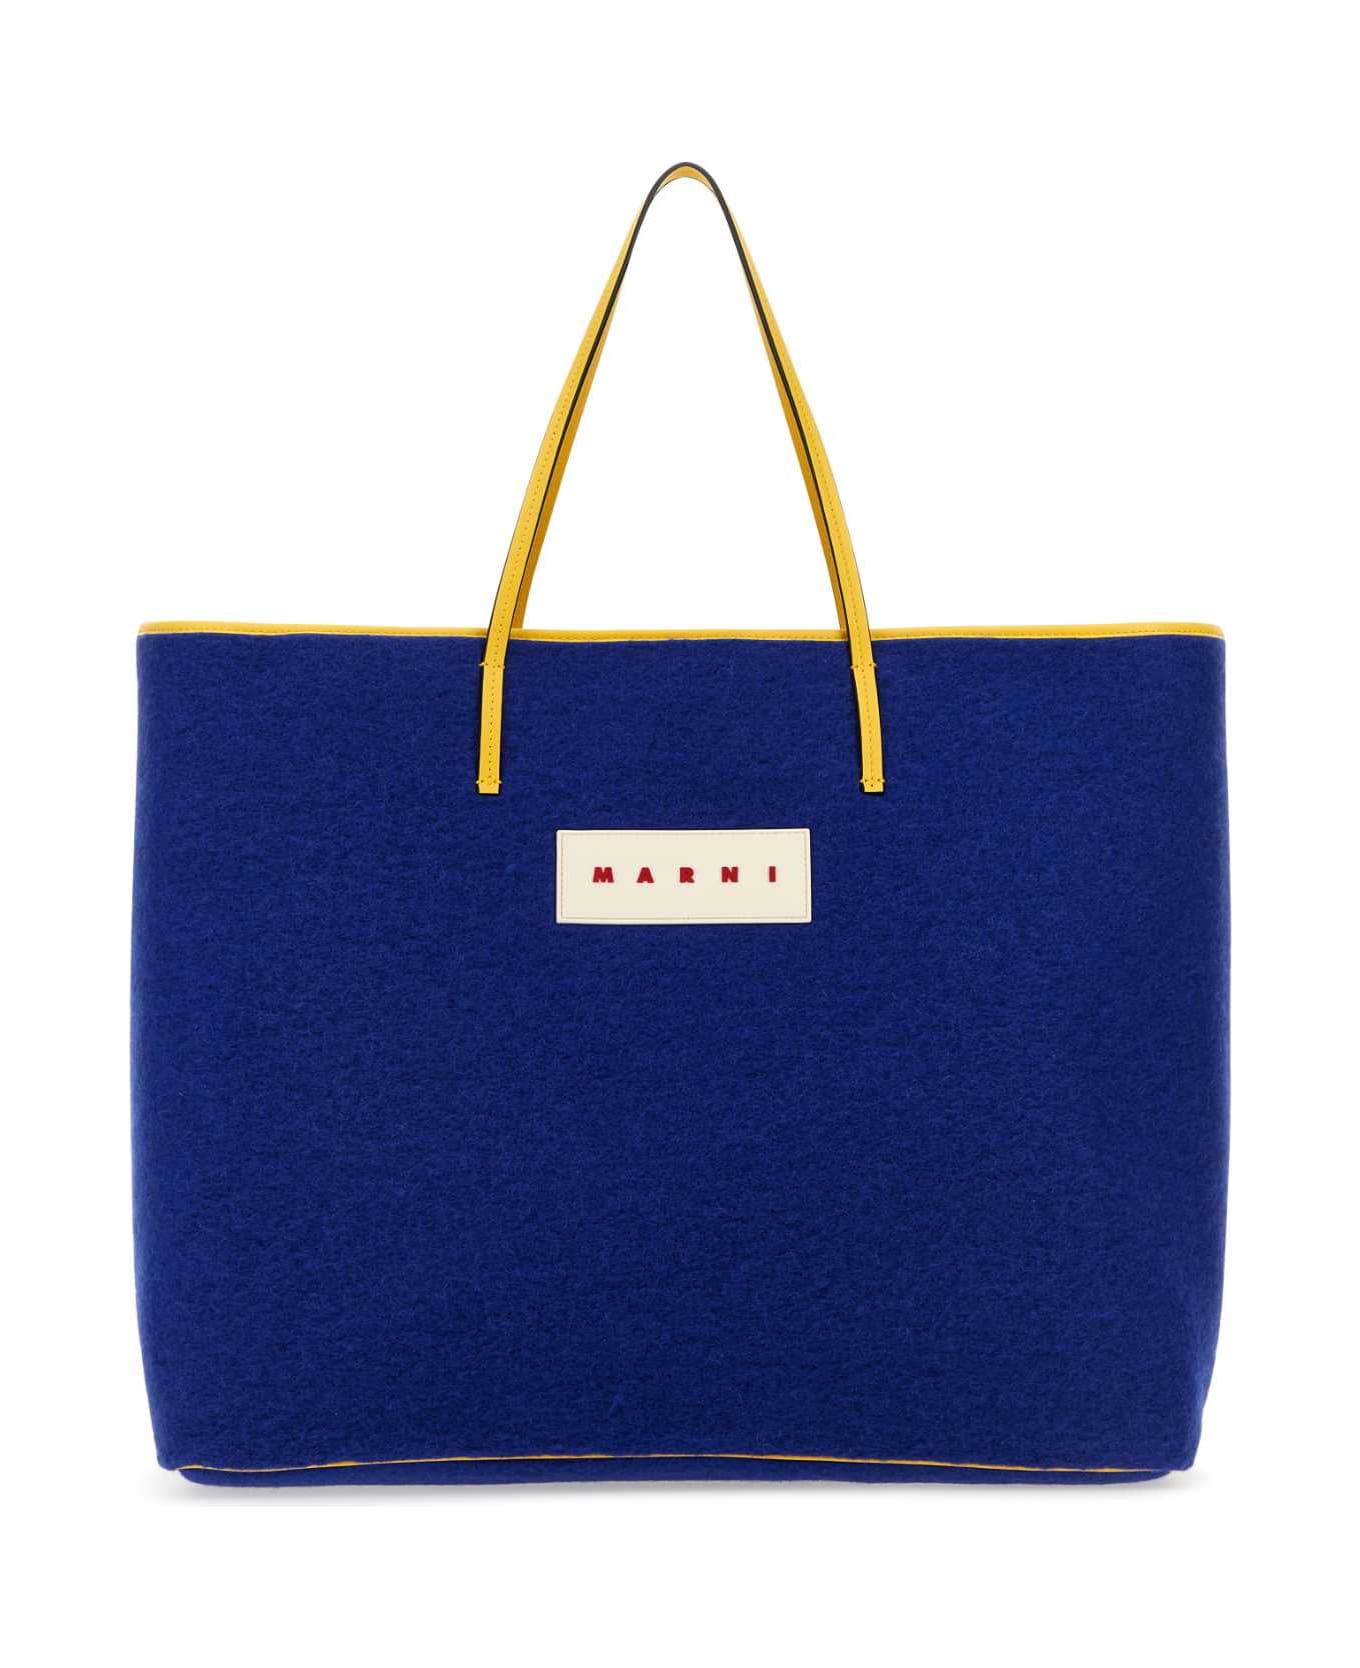 Marni Blue Felt Medium Janus Shopping Bag - ROYAL